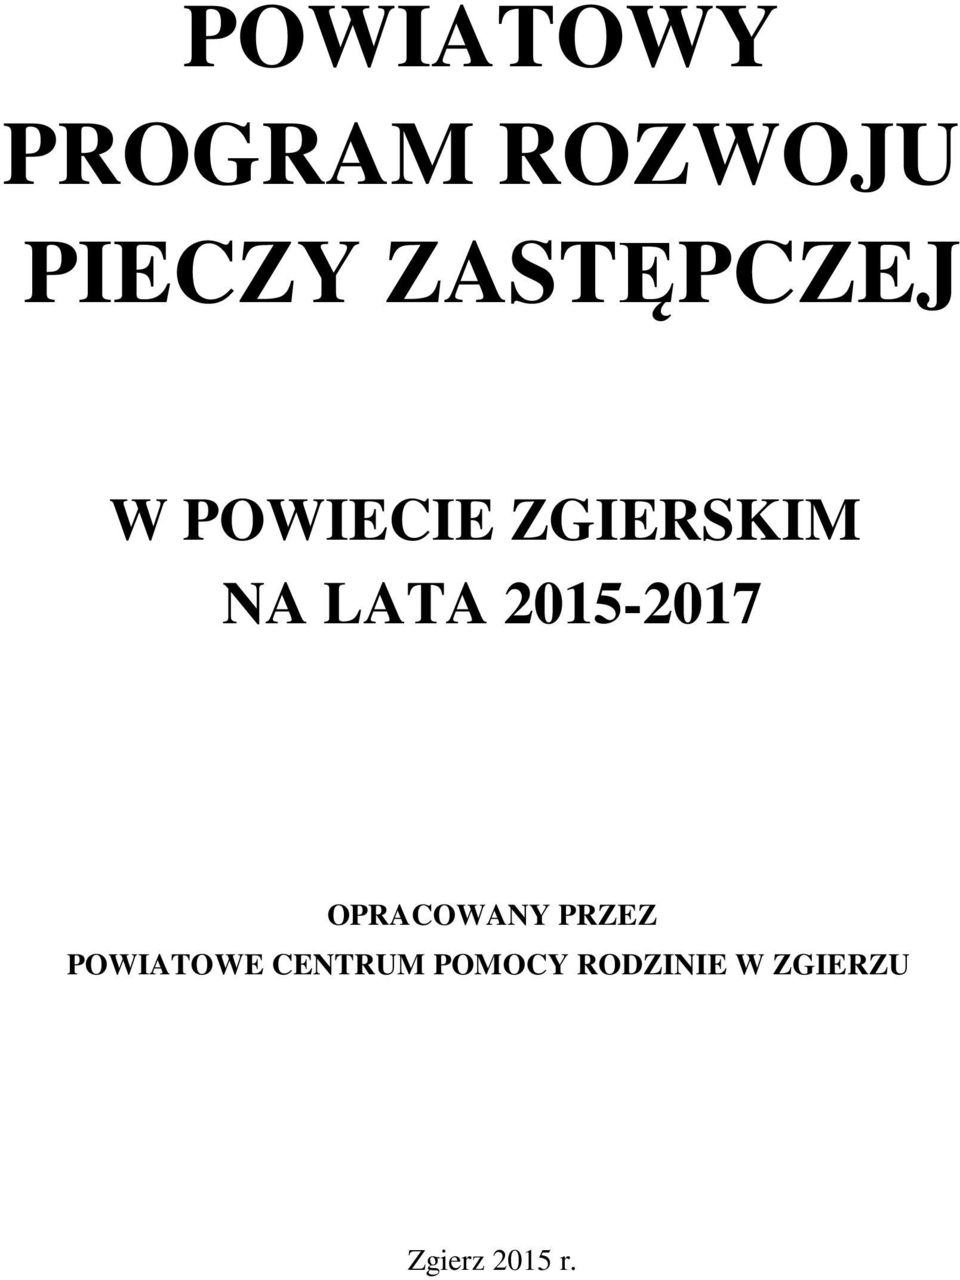 2015-2017 OPRACOWANY PRZEZ POWIATOWE